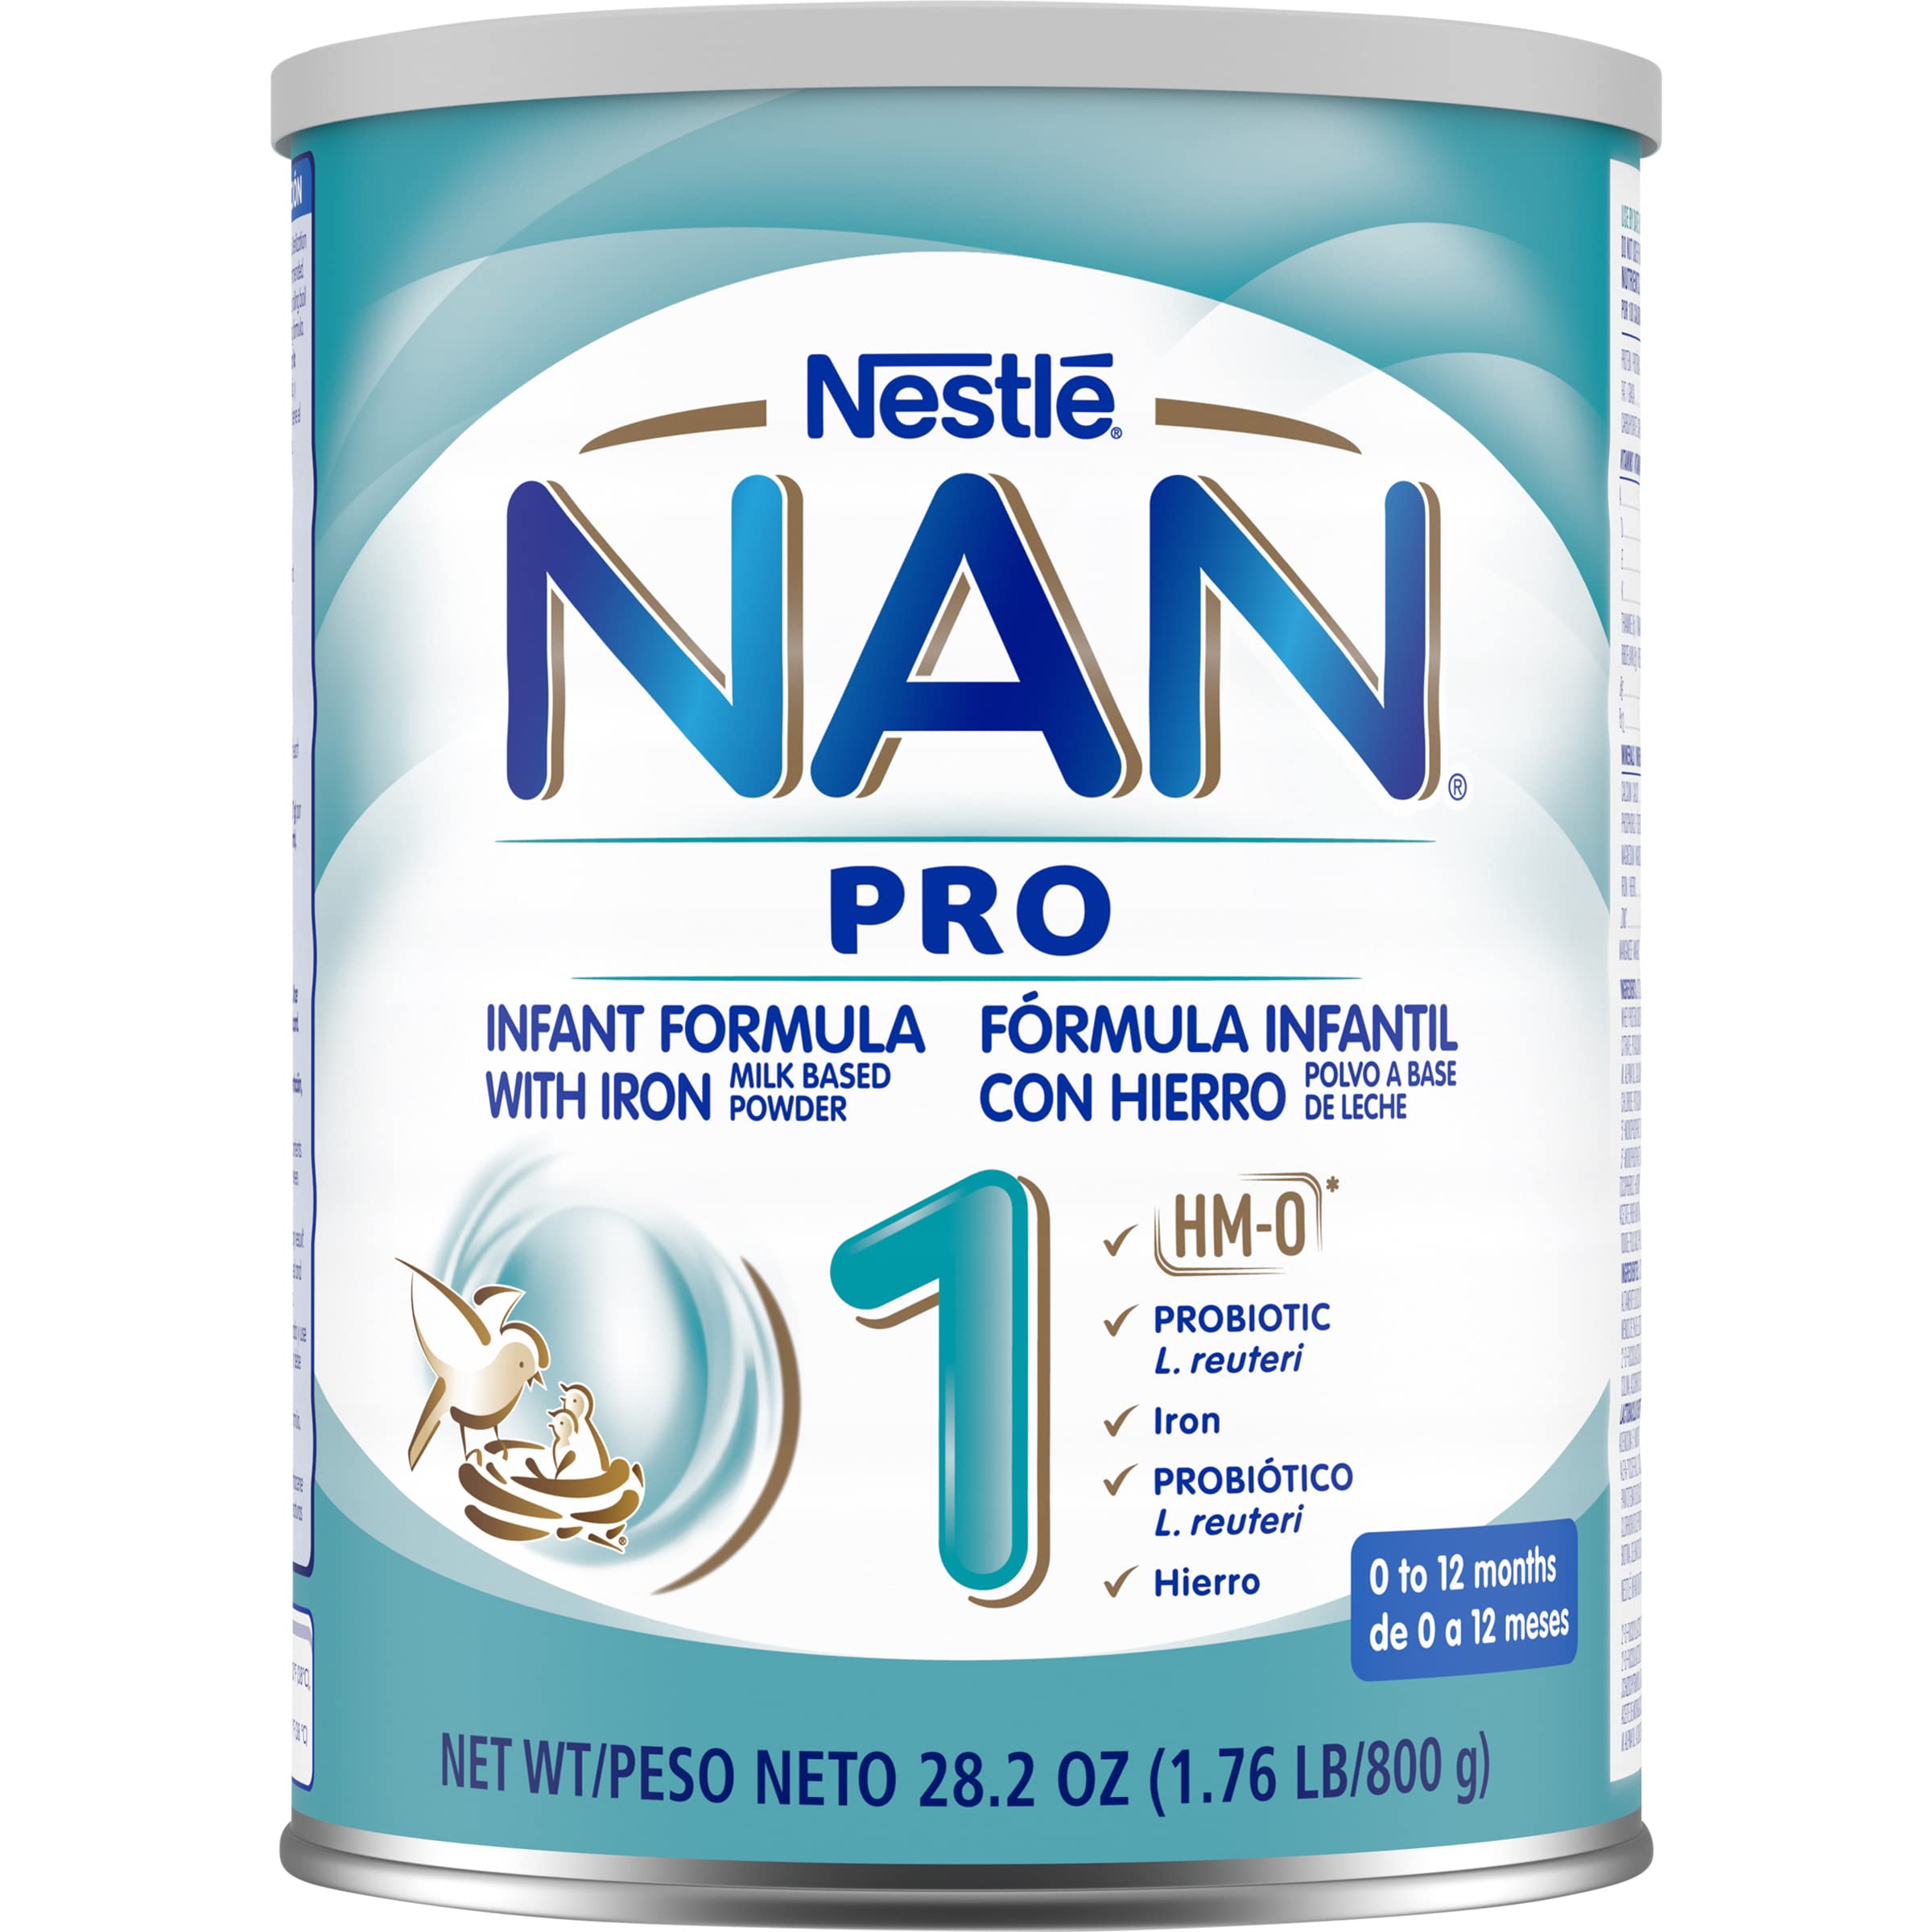 Nestle NAN OPTIPRO 1 HM-O milk powder